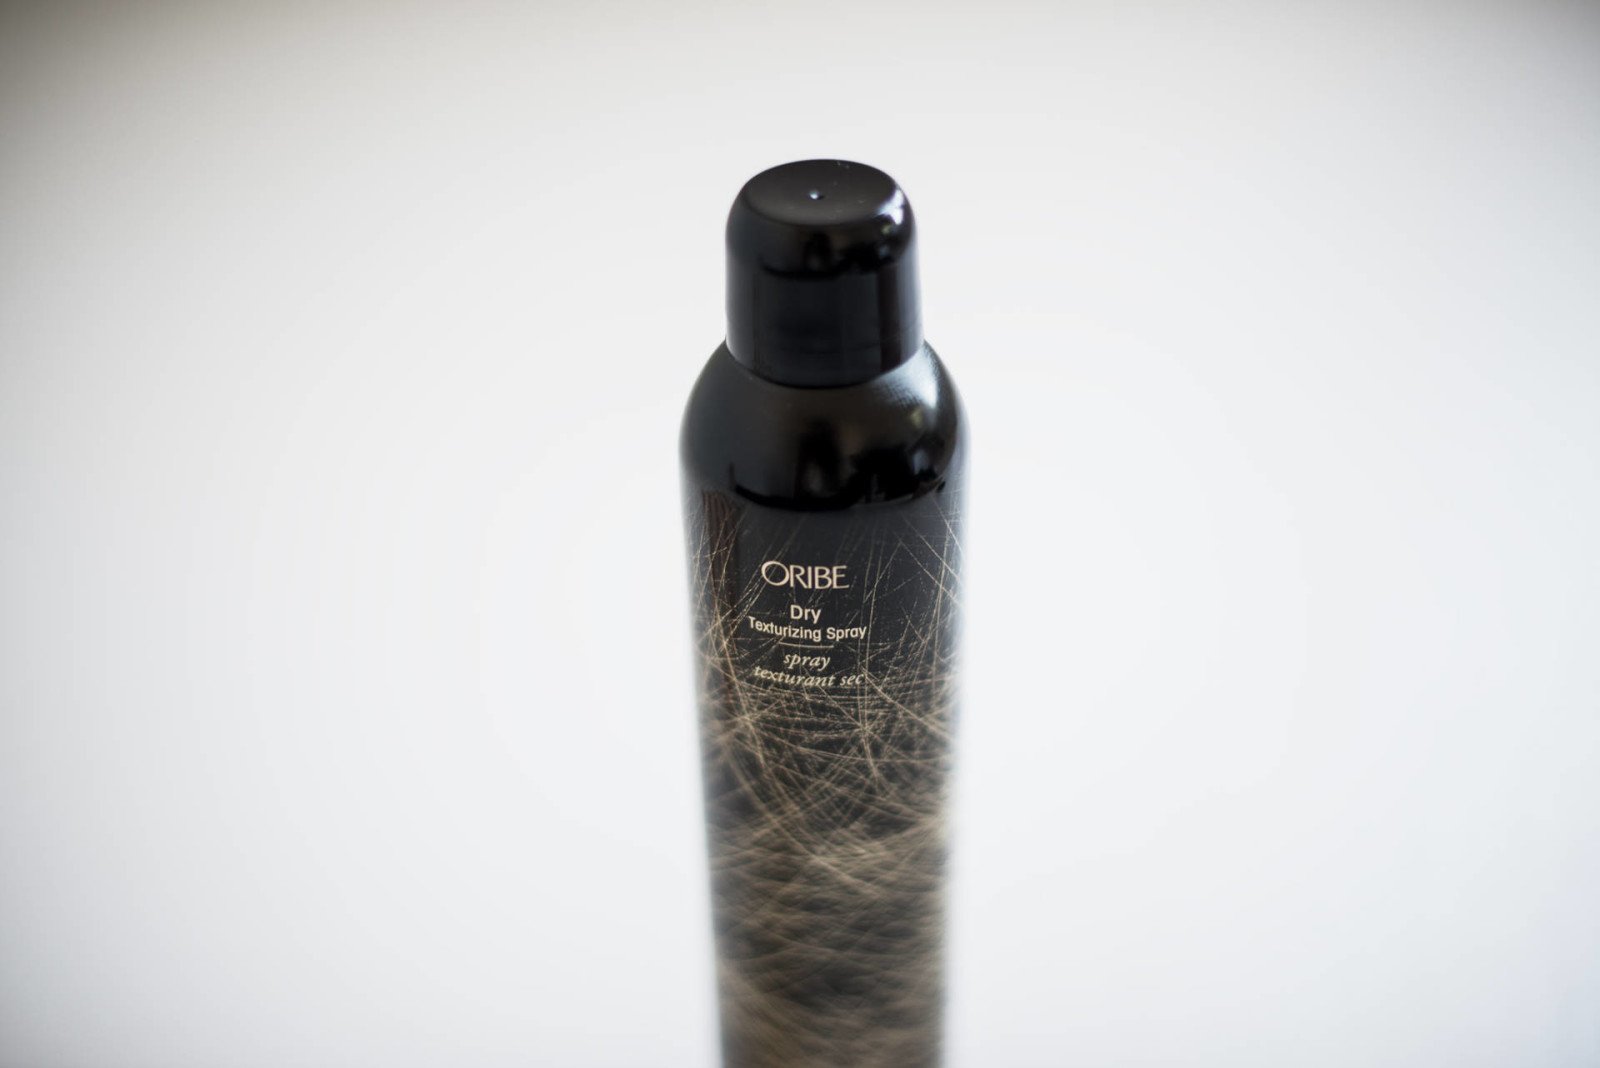 Oribe Dry Texturizing Spray